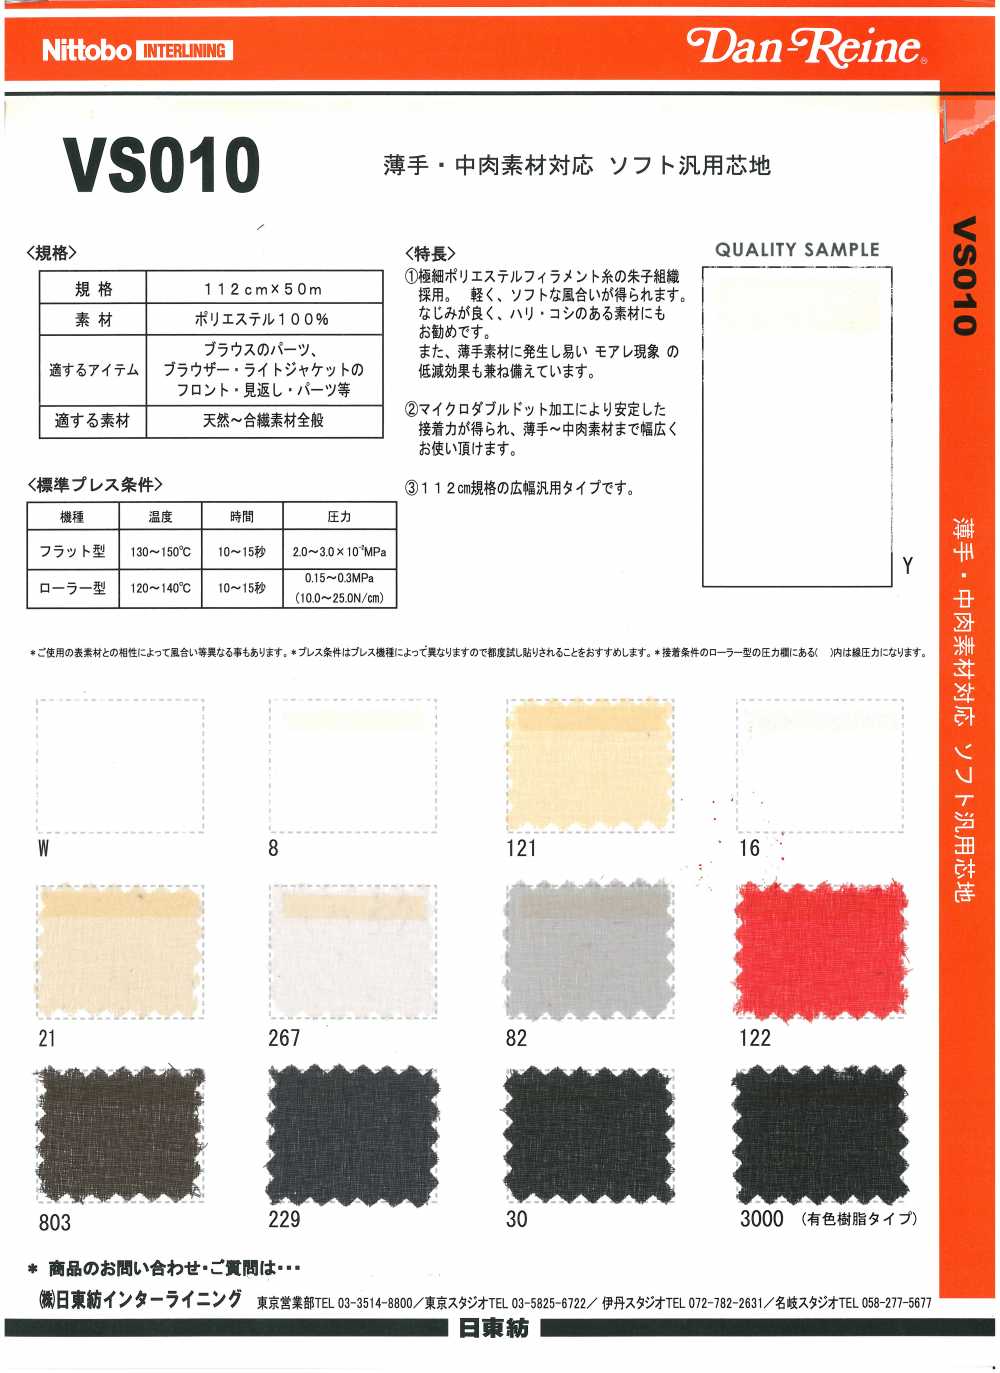 VS010 适合薄中厚材料 柔软通用衬布 20D 日东纺绩